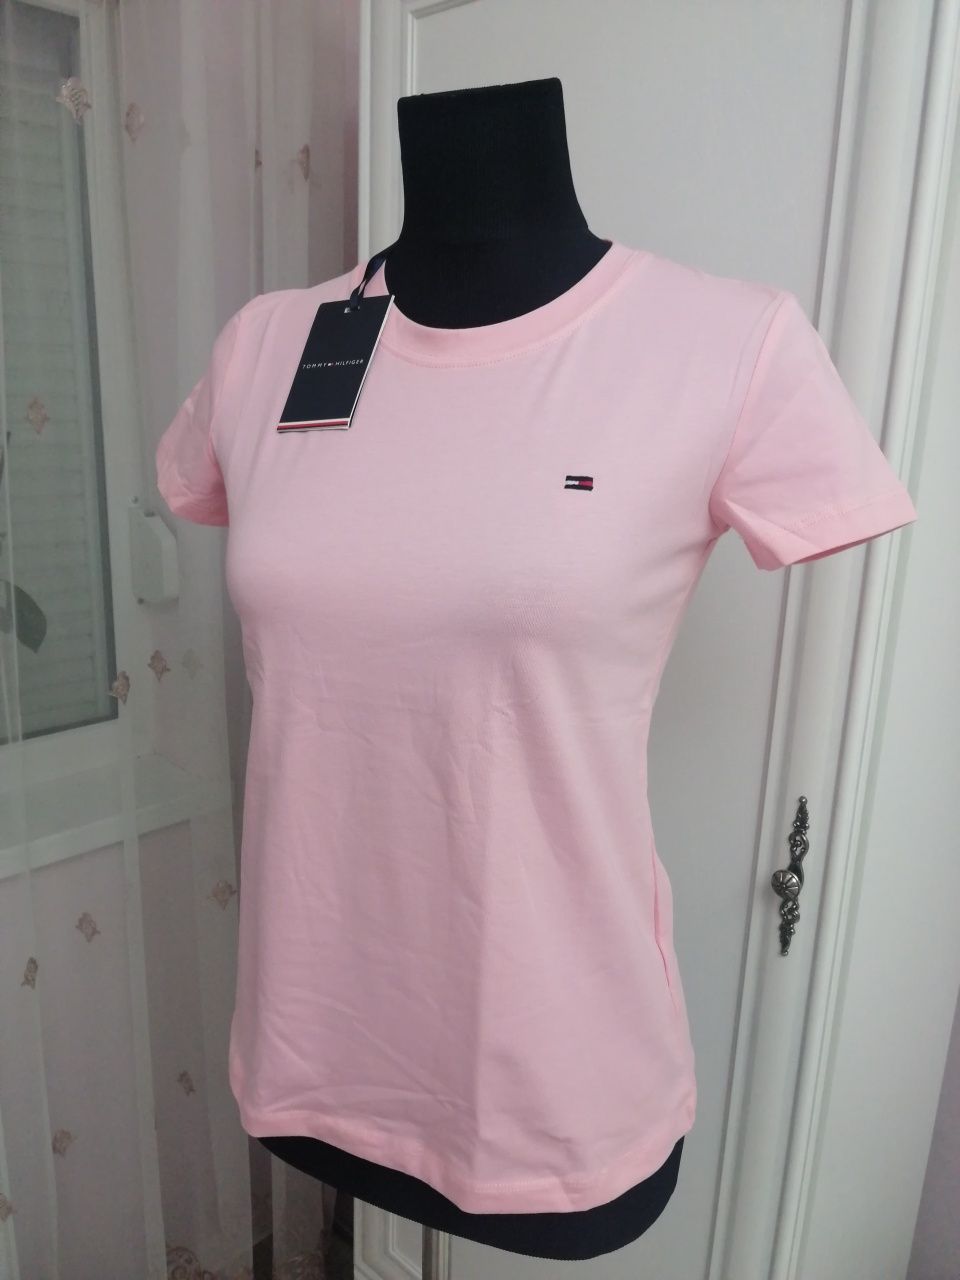 Tricou damă roz deschis, Tommy Hilfiger, mărimea S/36, nou cu etichetă